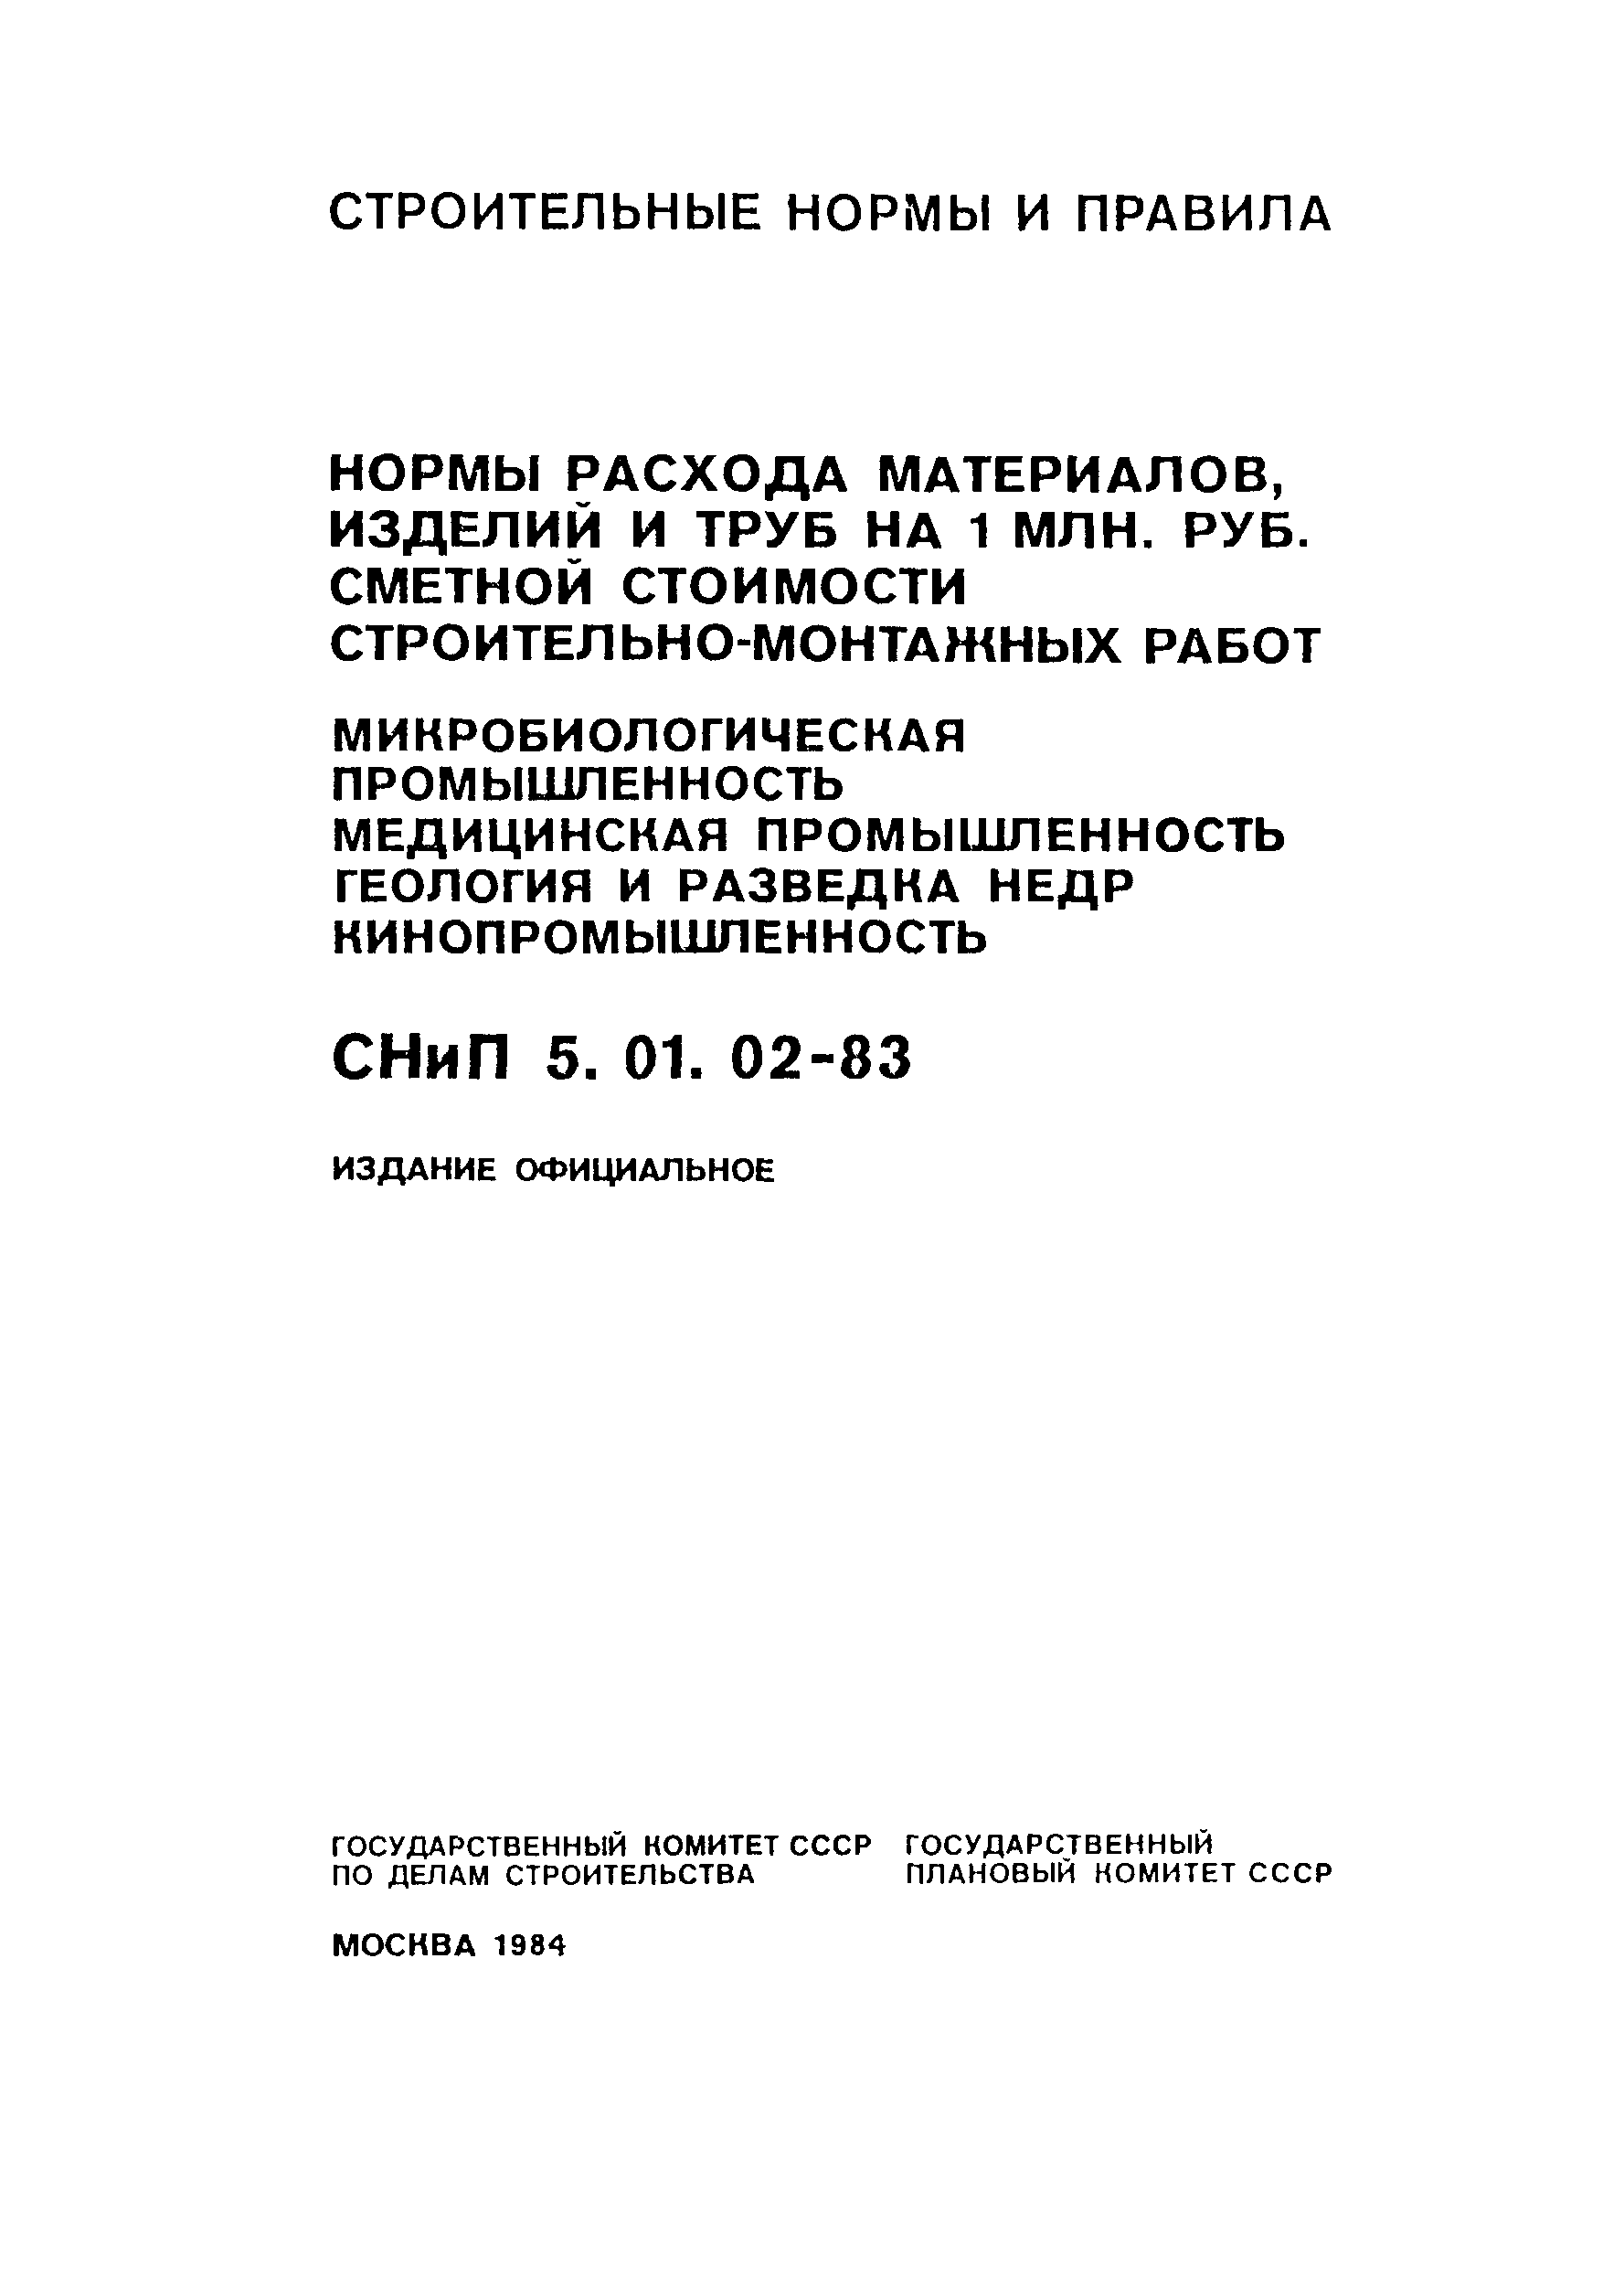 СНиП 5.01.02-83